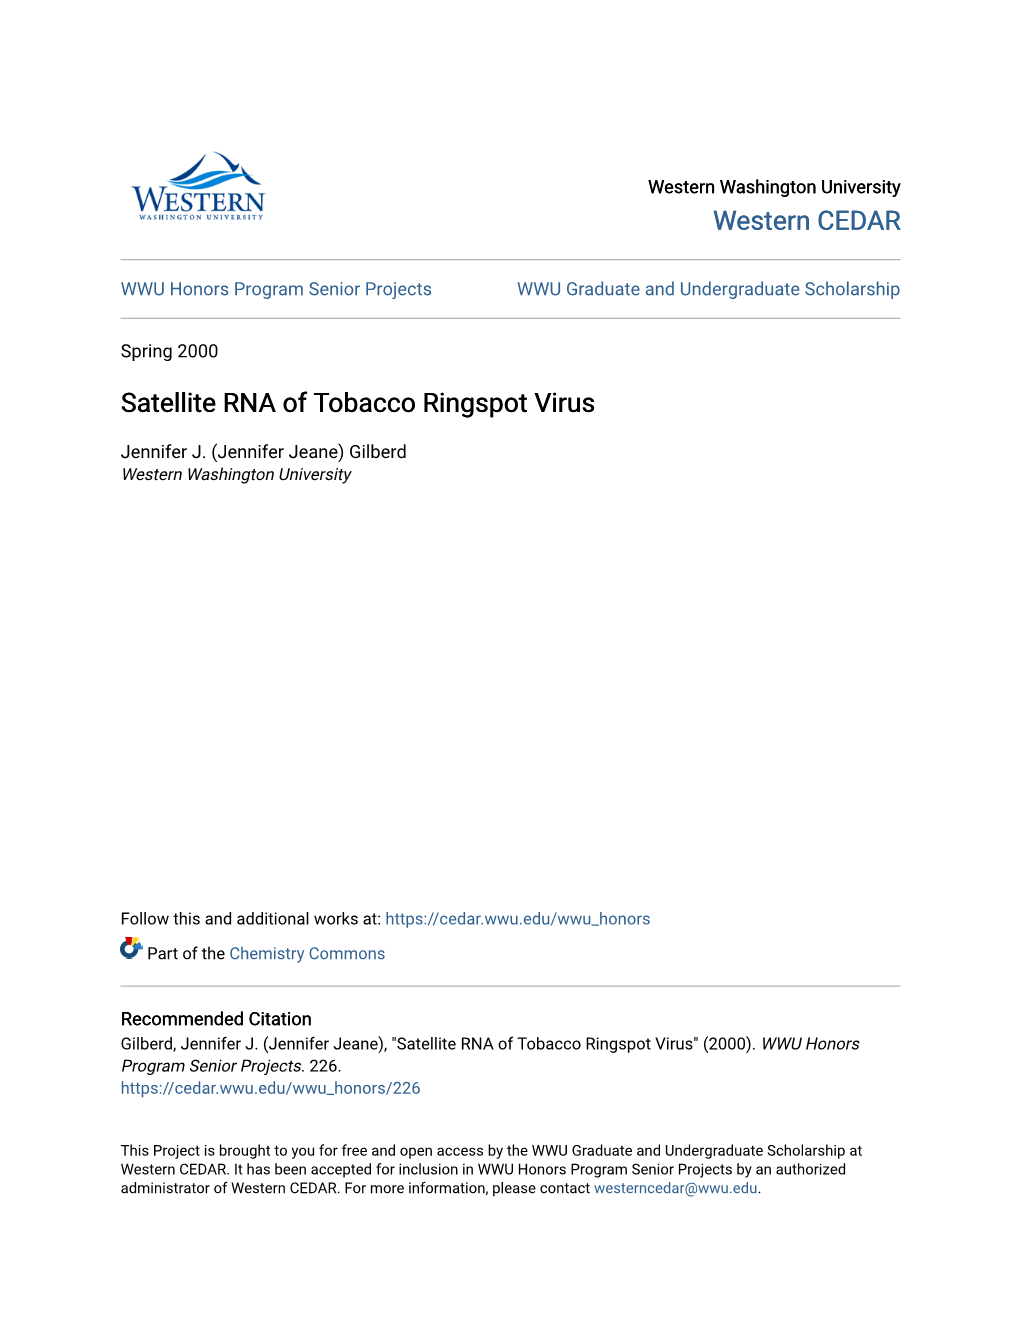 Satellite RNA of Tobacco Ringspot Virus